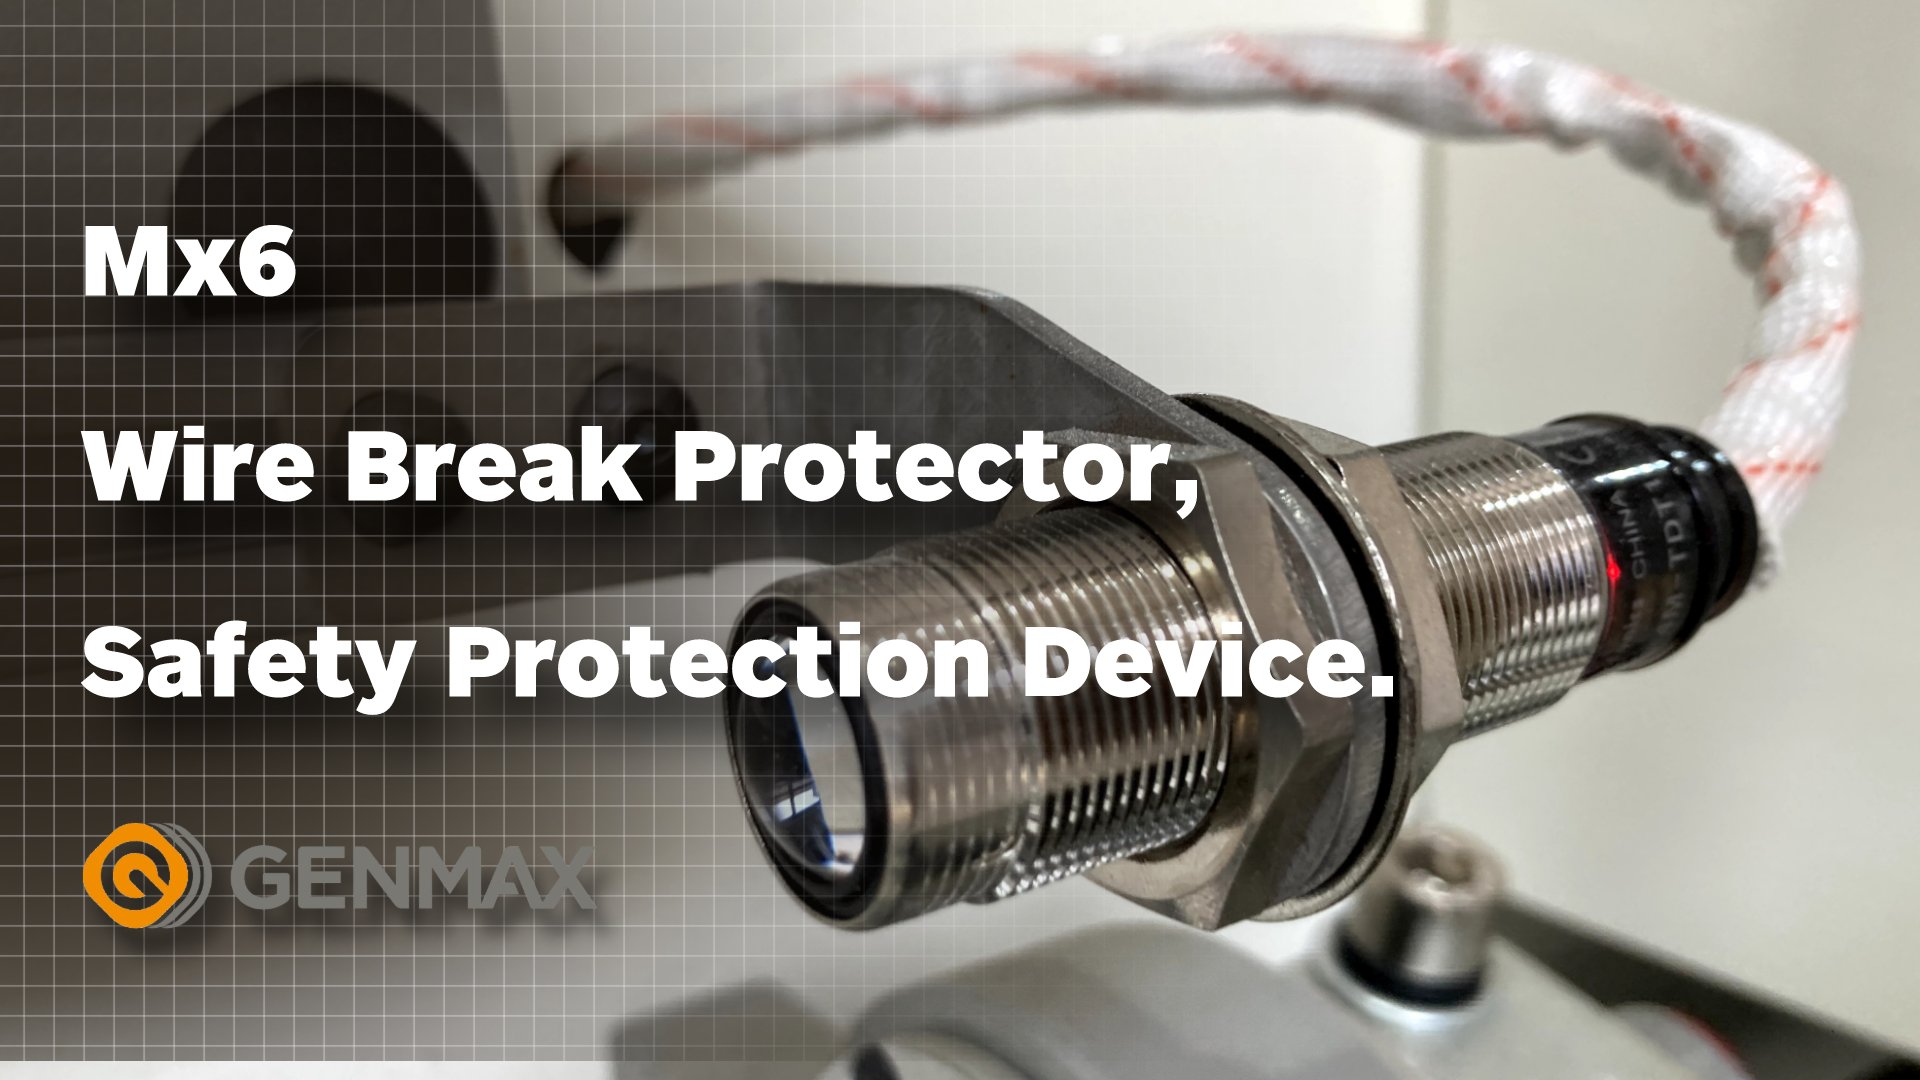 Protecteur de rupture de fil MX6, dispositif de protection de sécurité.